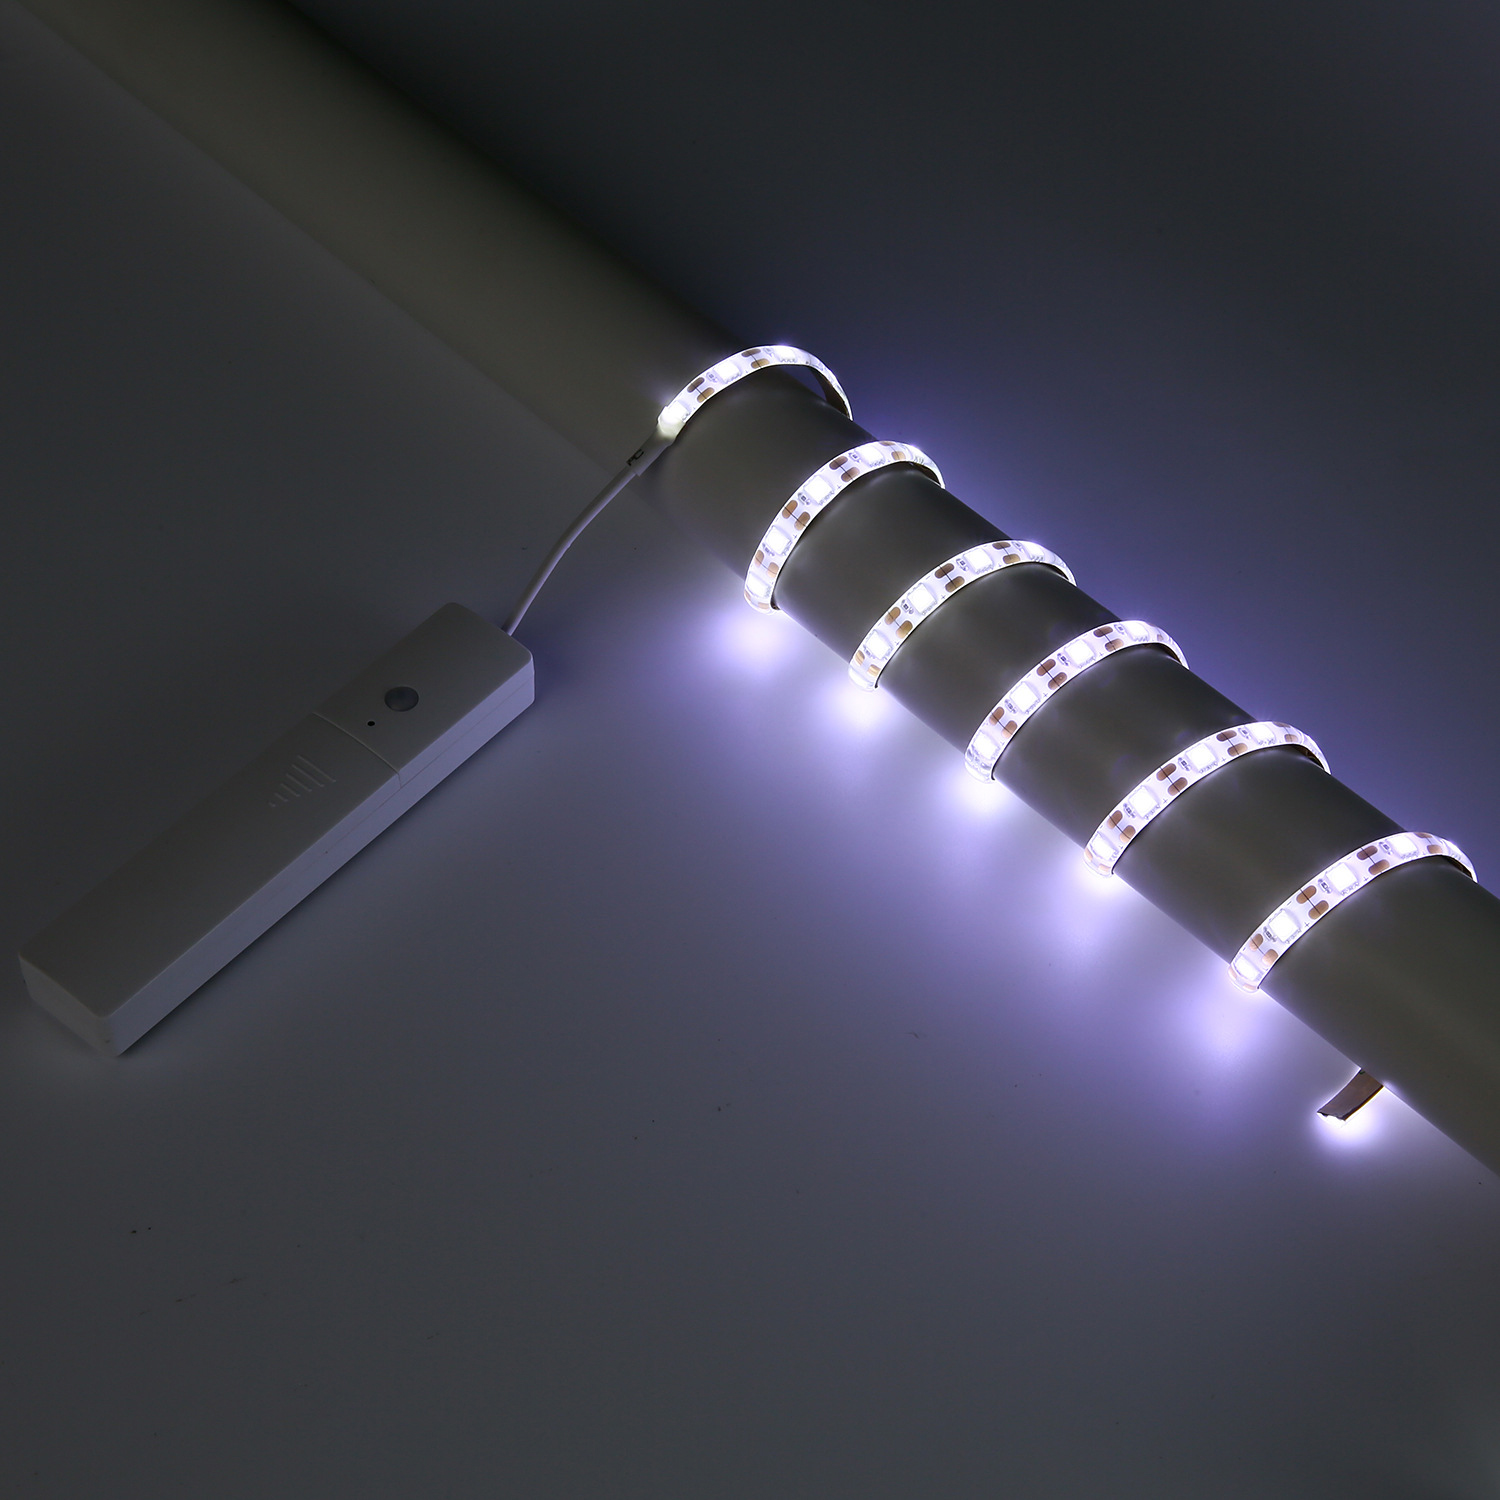 Đèn LED Dây Trang Trí Cảm Ứng Chuyển Động Dùng Pin LEDLINE03